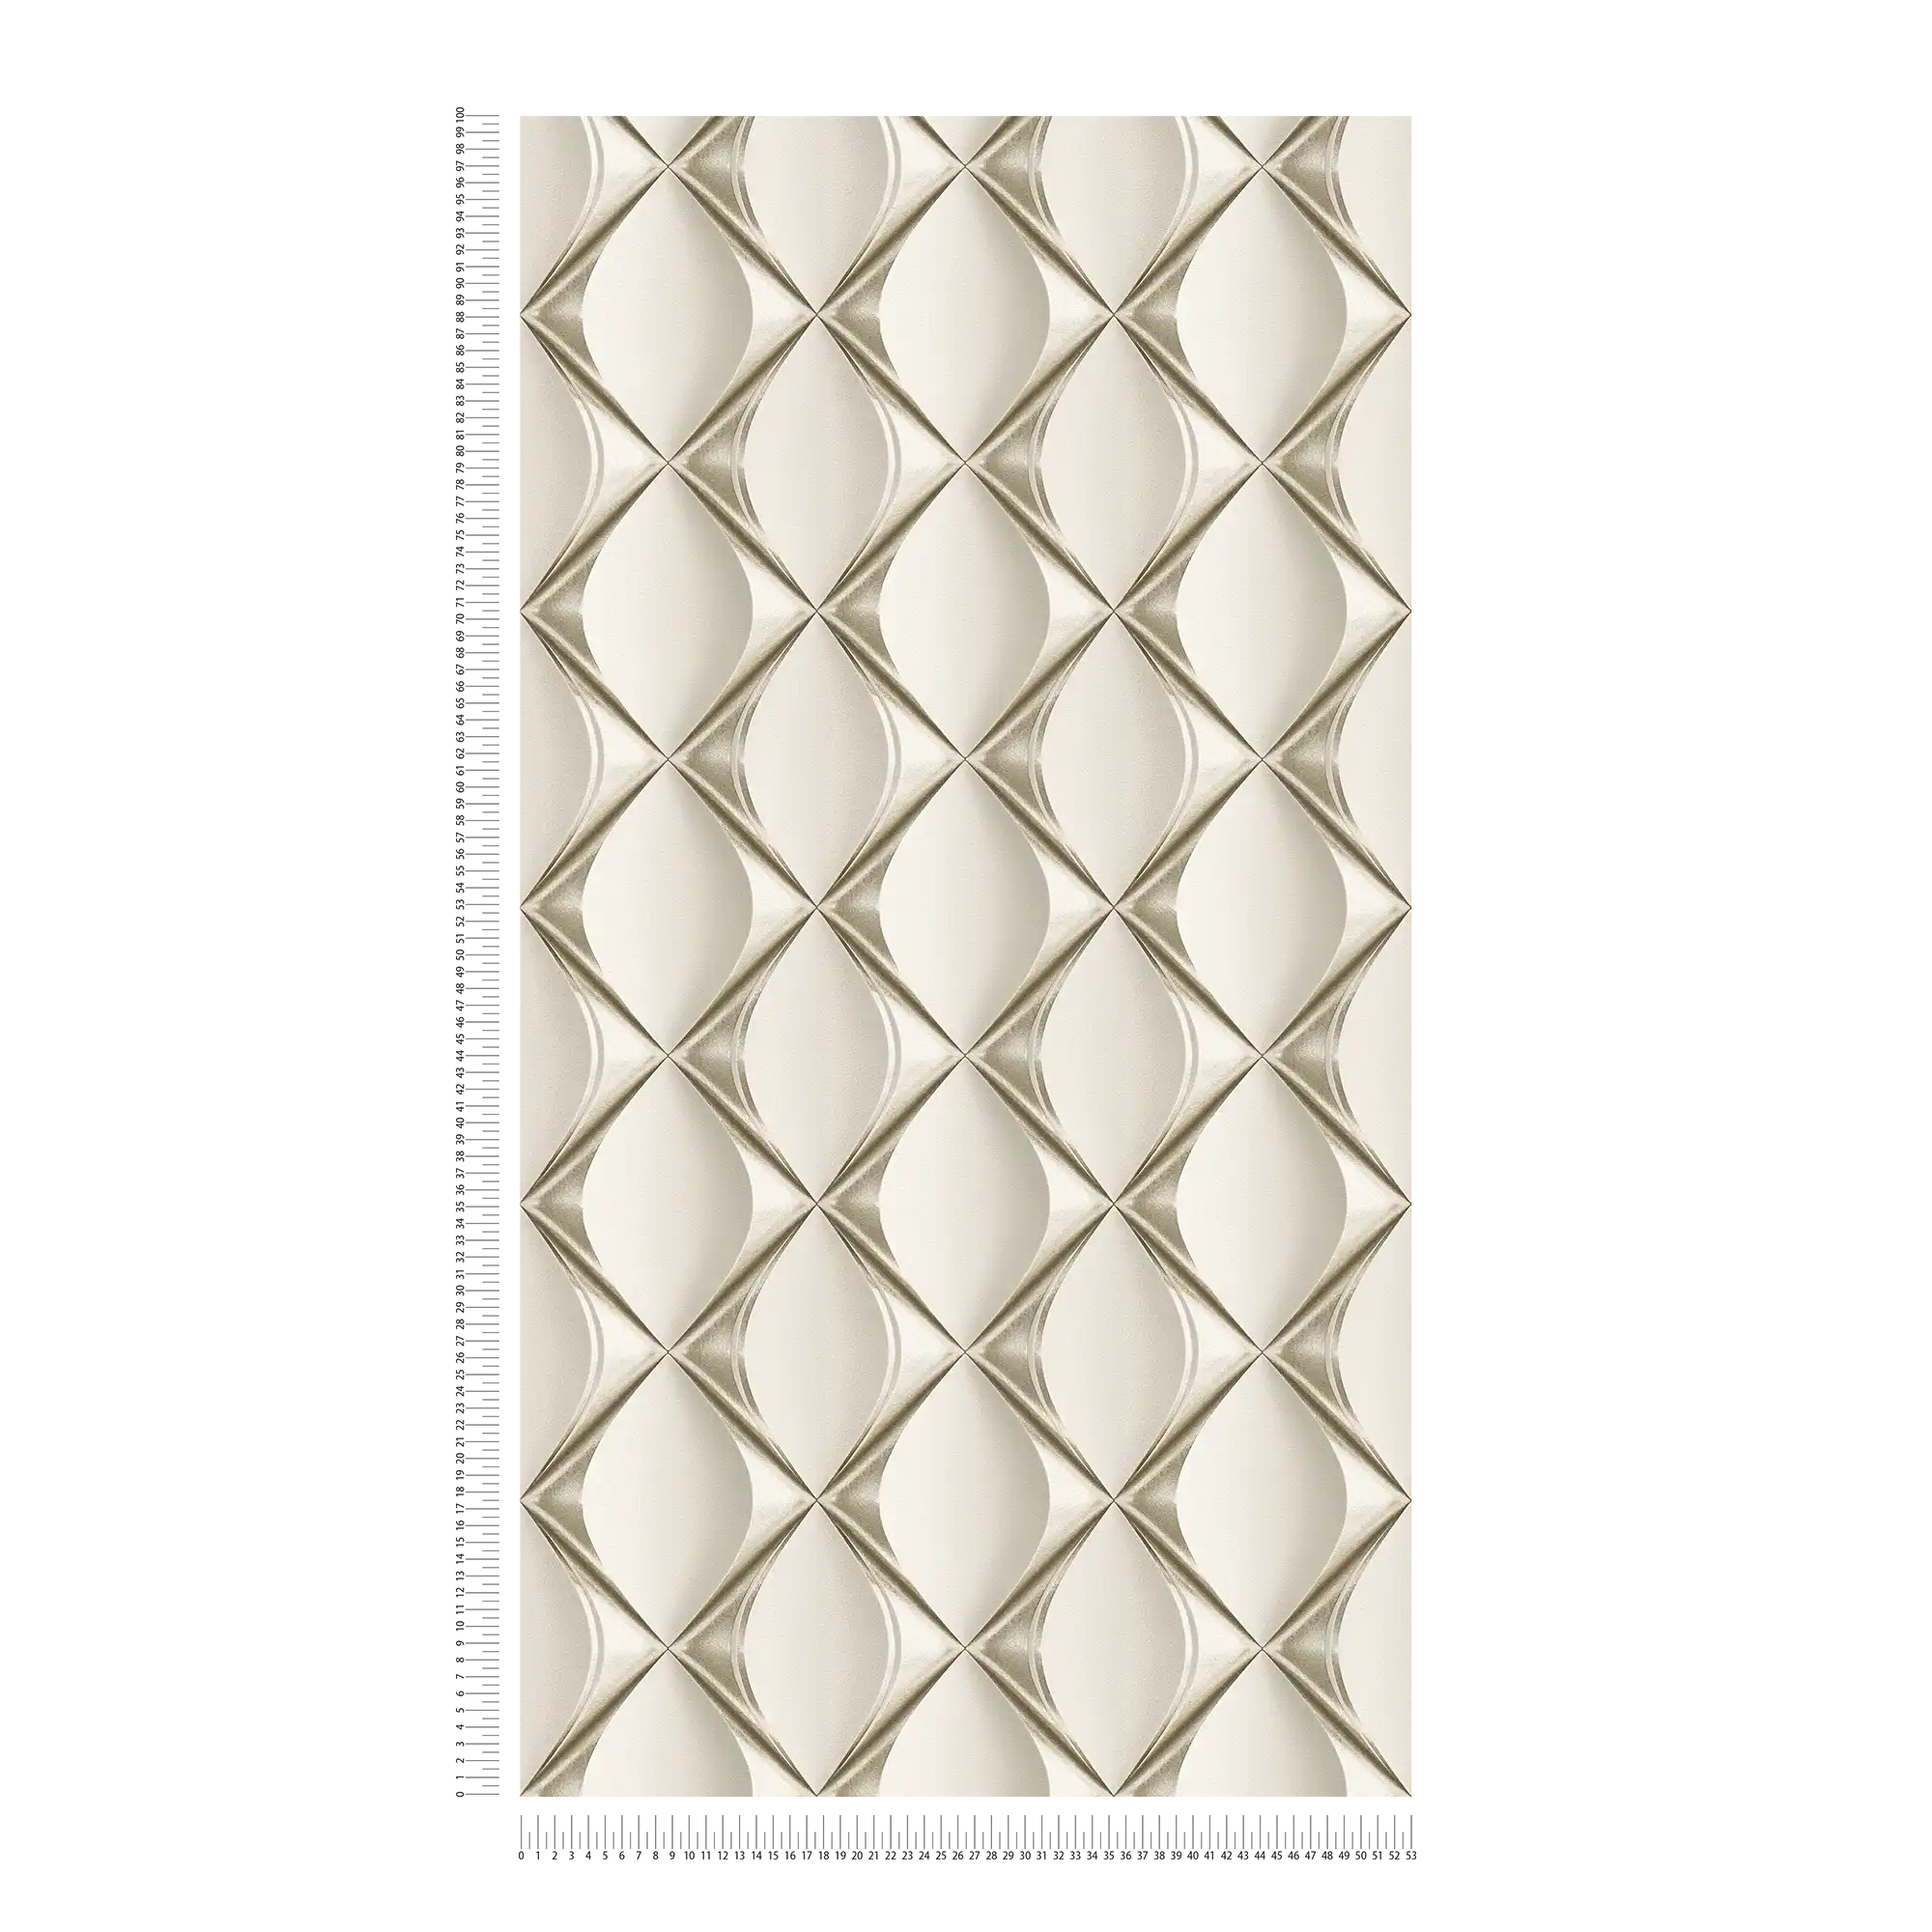             Carta da parati 3D bianco-argento con design retrò - grigio, metallizzato, beige
        